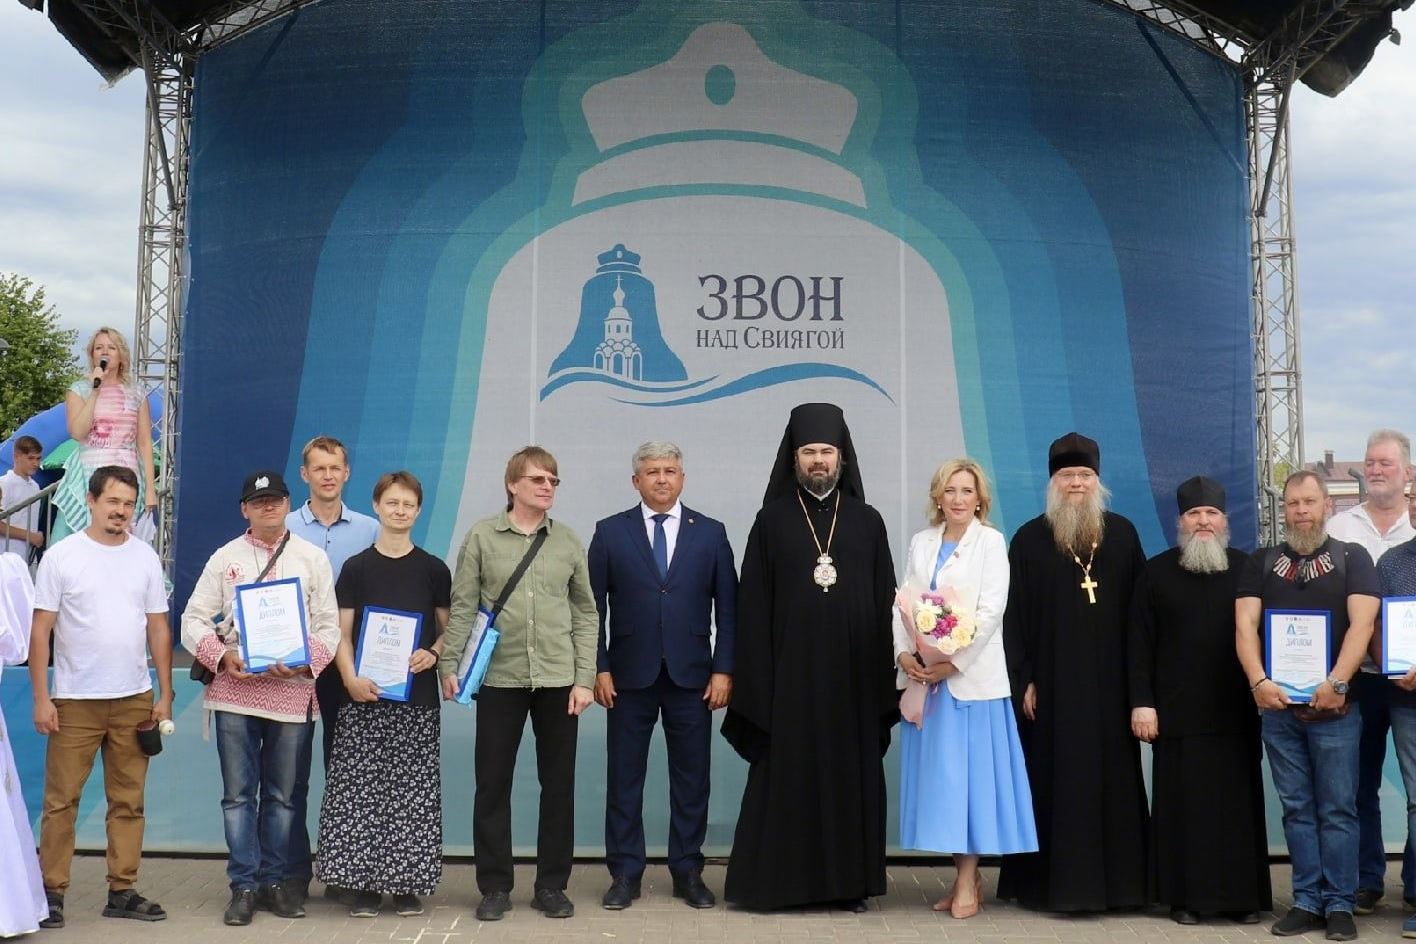 Челнинский звонарь принял участие в Фестивале колокольного звона «Звон над Свиягой»